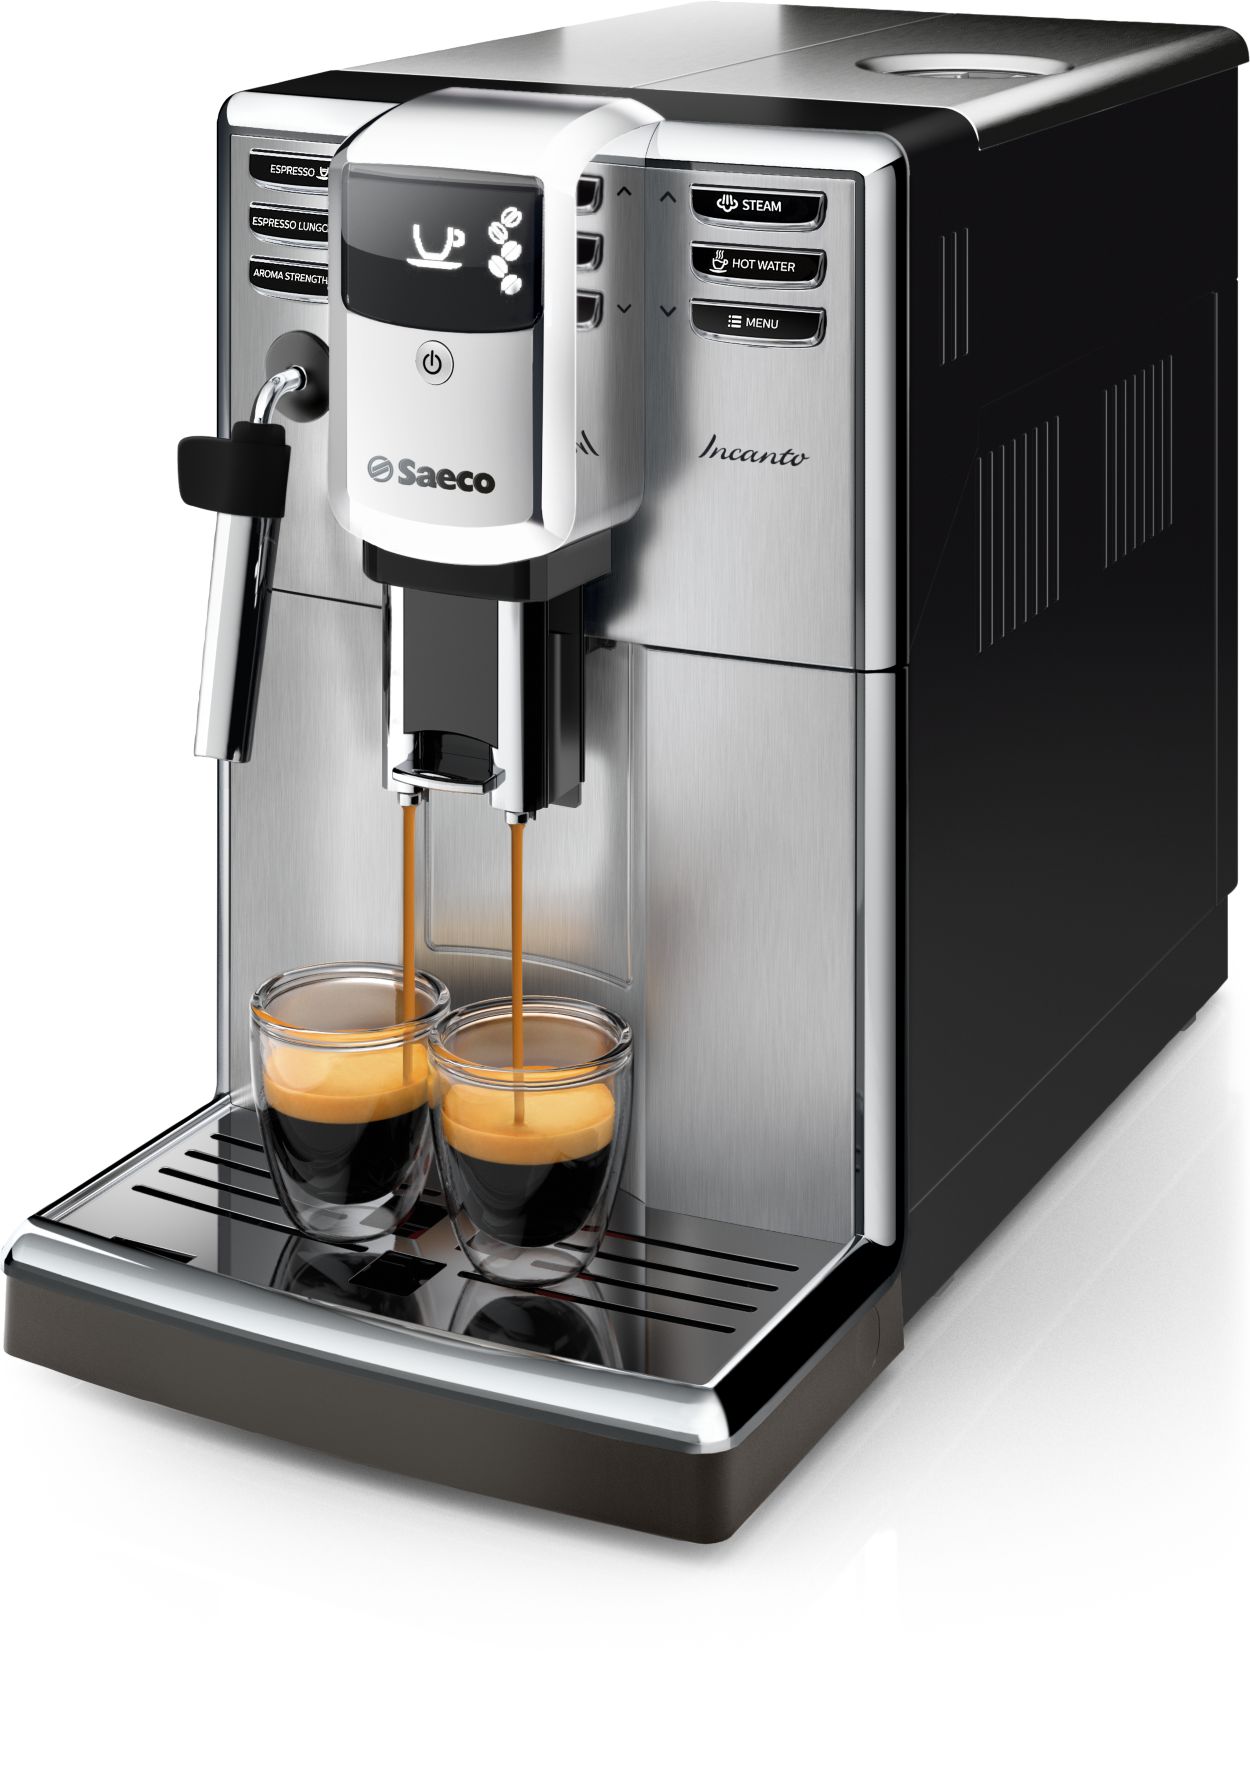 Machine a cafe grain saeco - Cdiscount